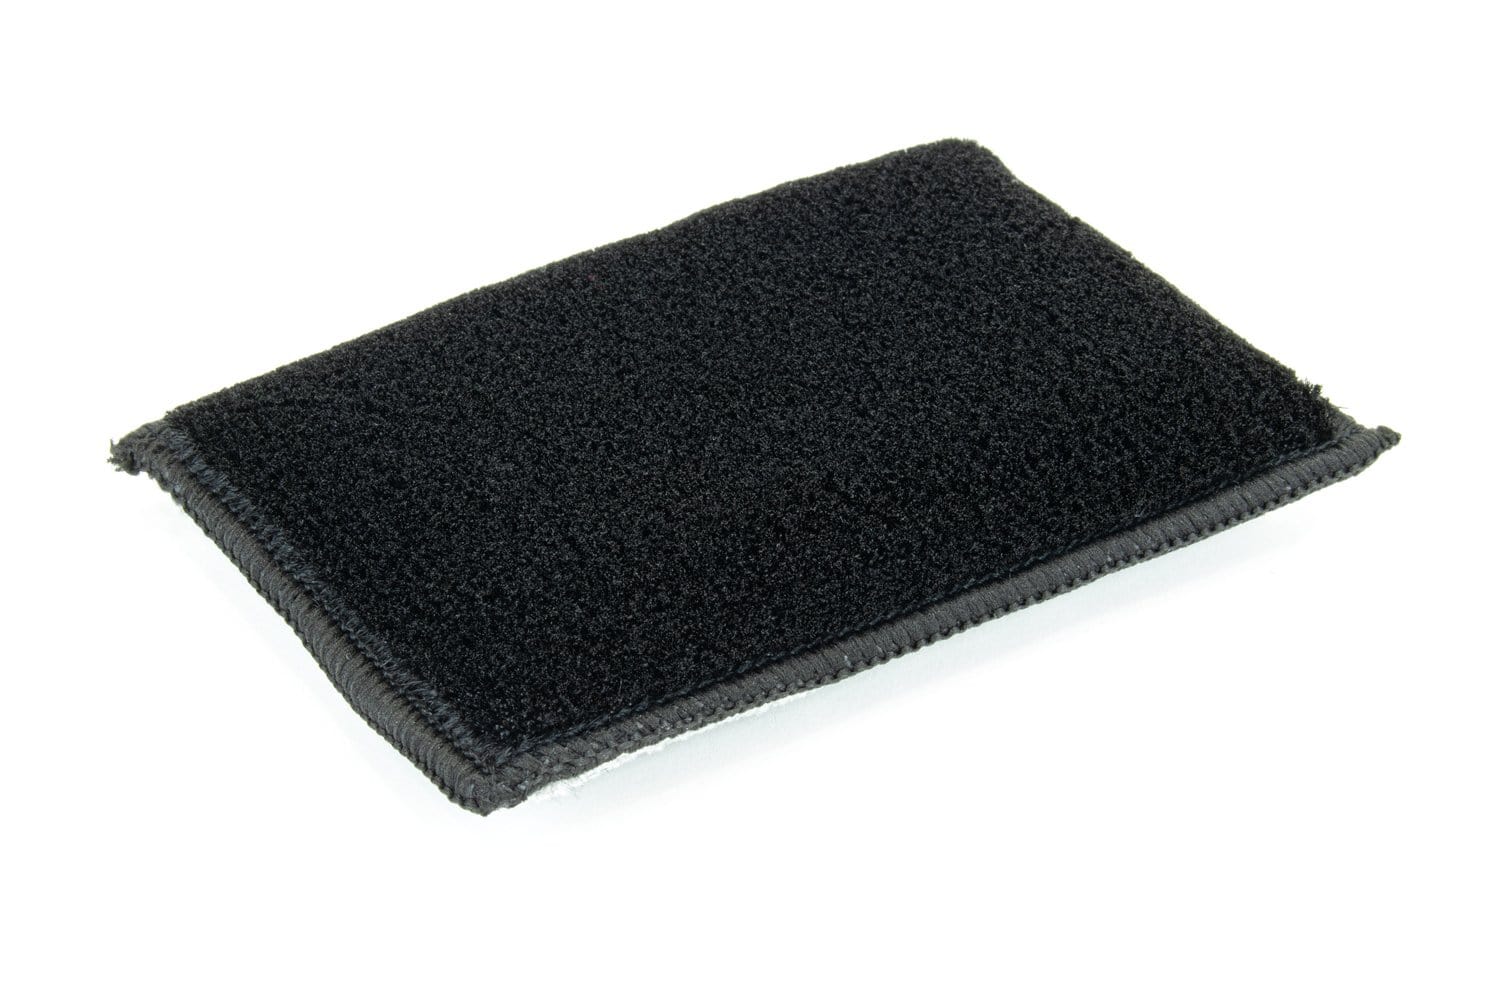 Autofiber Scrub Ninja - Interior Scrubbing Sponge (5 in. x 3 in.) - 3 pack